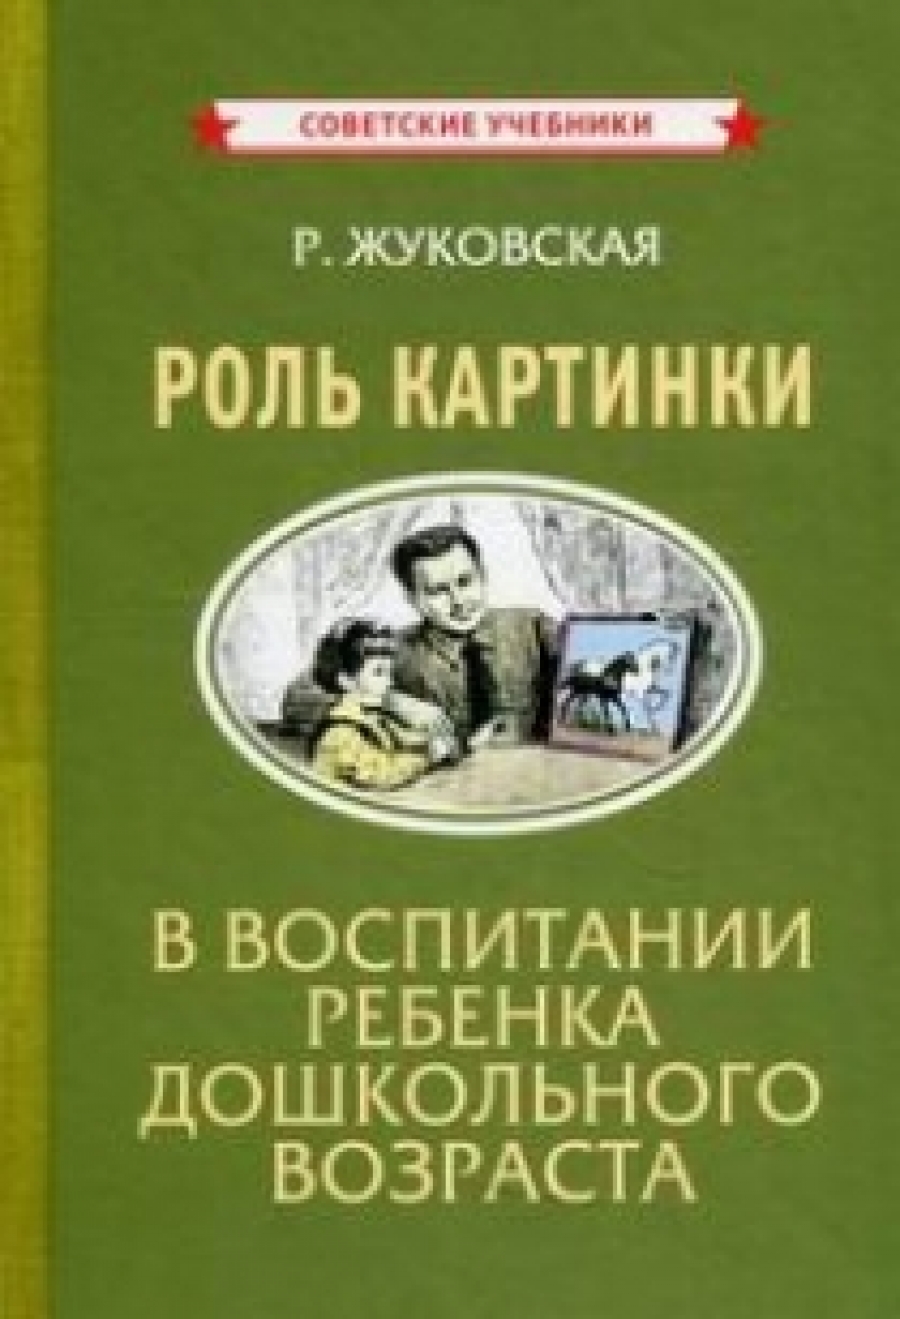 Жуковская Р. Роль картинки в воспитании ребенка дошкольного возраста 